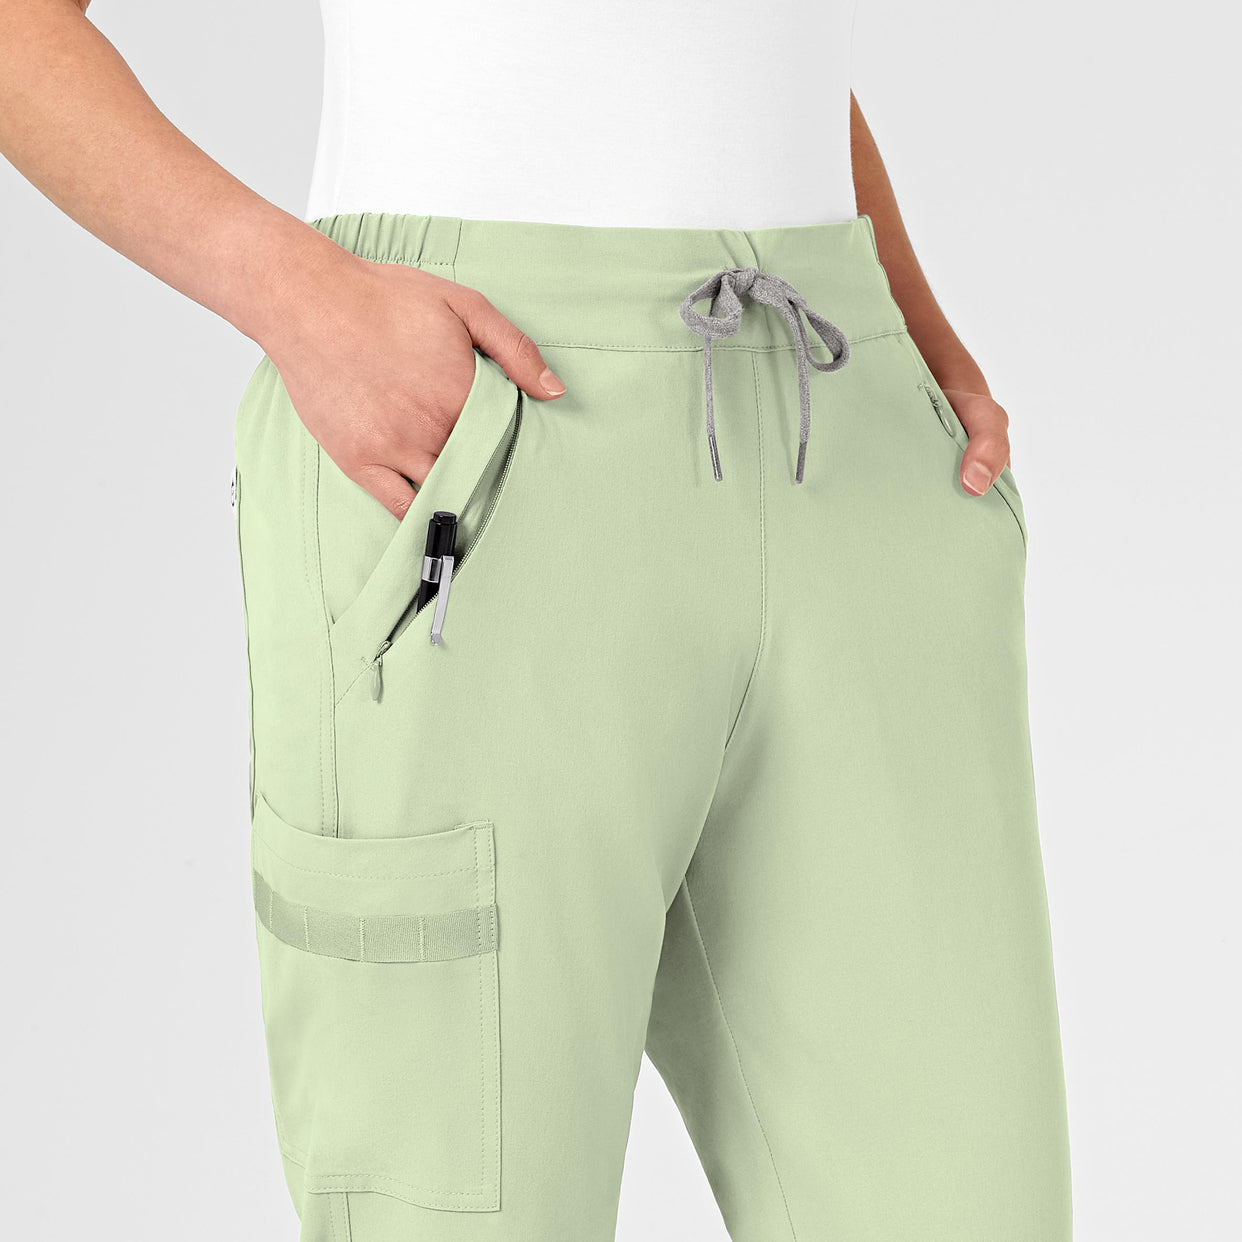 RENEW Women's Jogger Scrub Pant Fresh Mint side detail 1